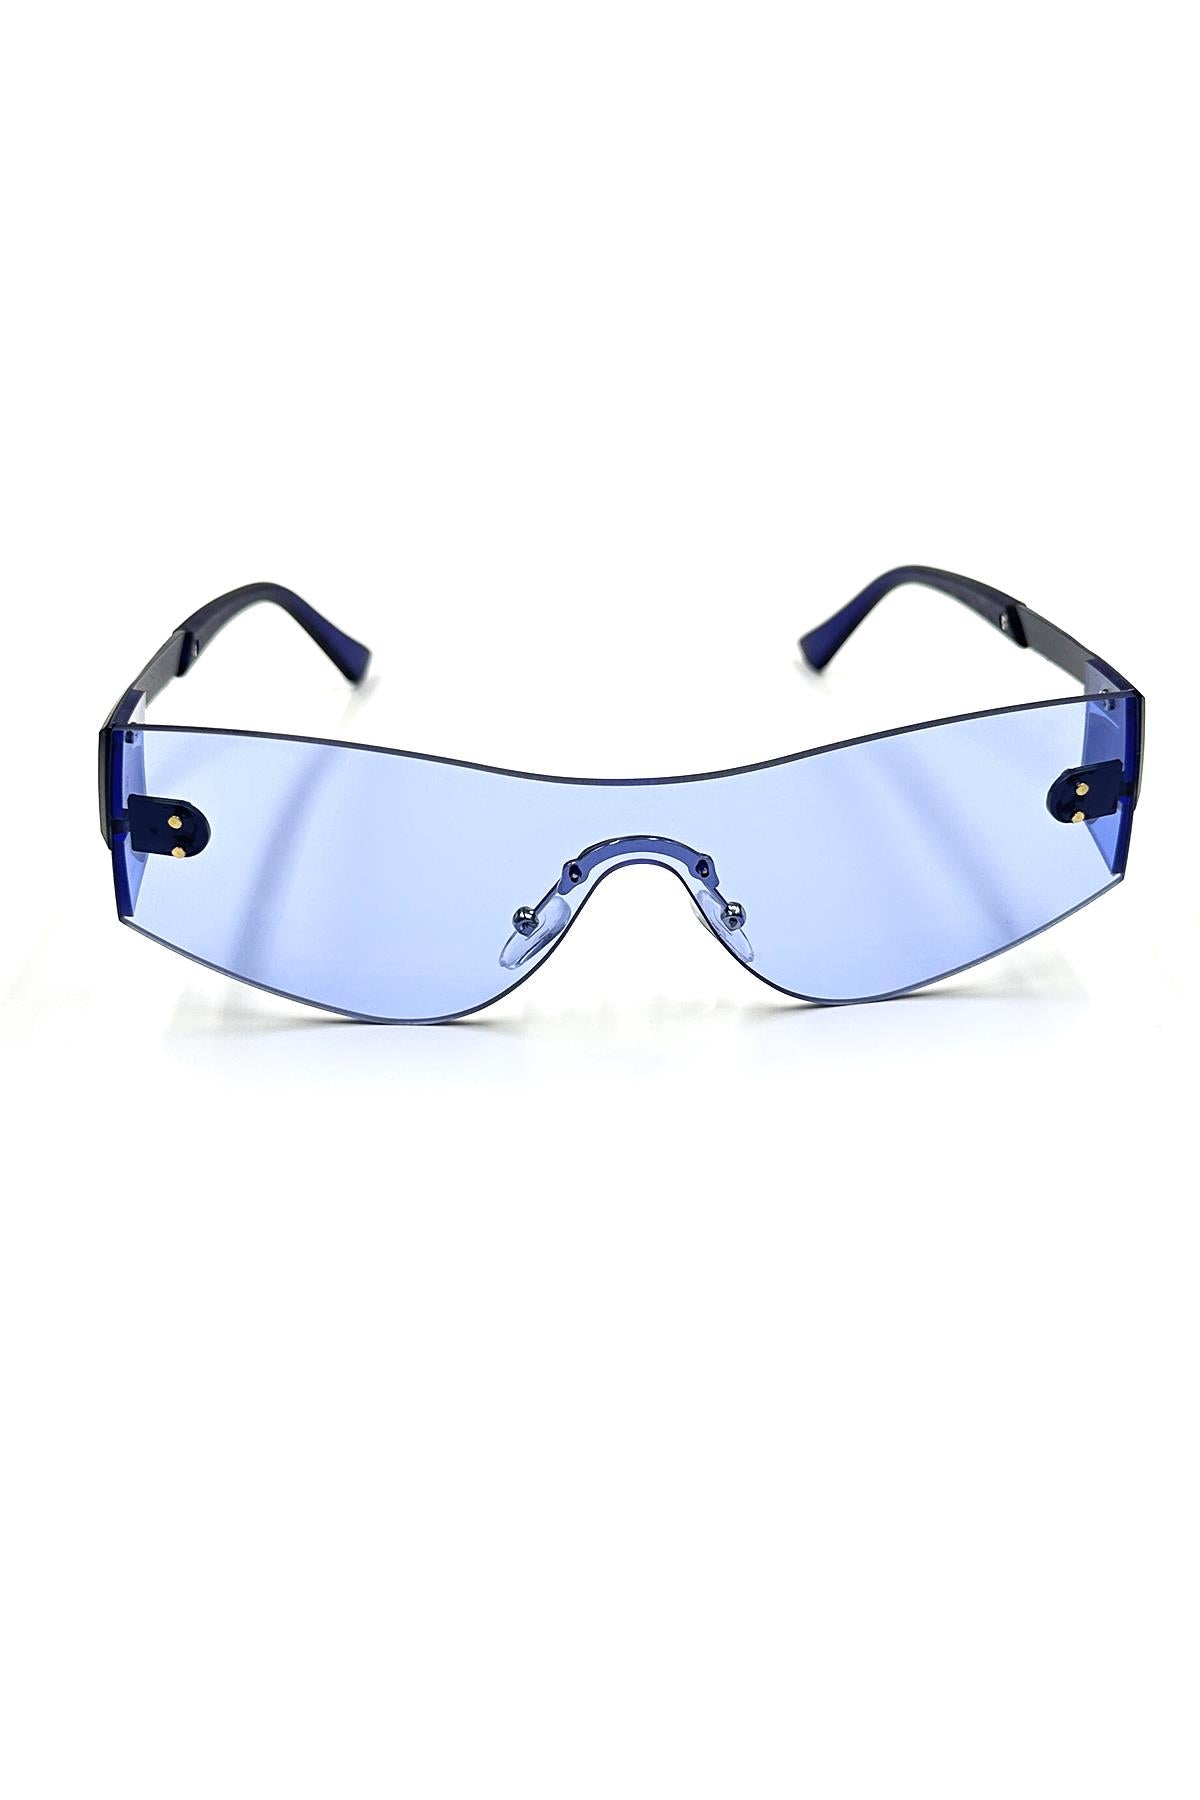 FRNCH Lacivert Çerçeve Mavi Cam Dikdörtgen Model Erkek Güneş Gözlüğü FRG1066-166-M